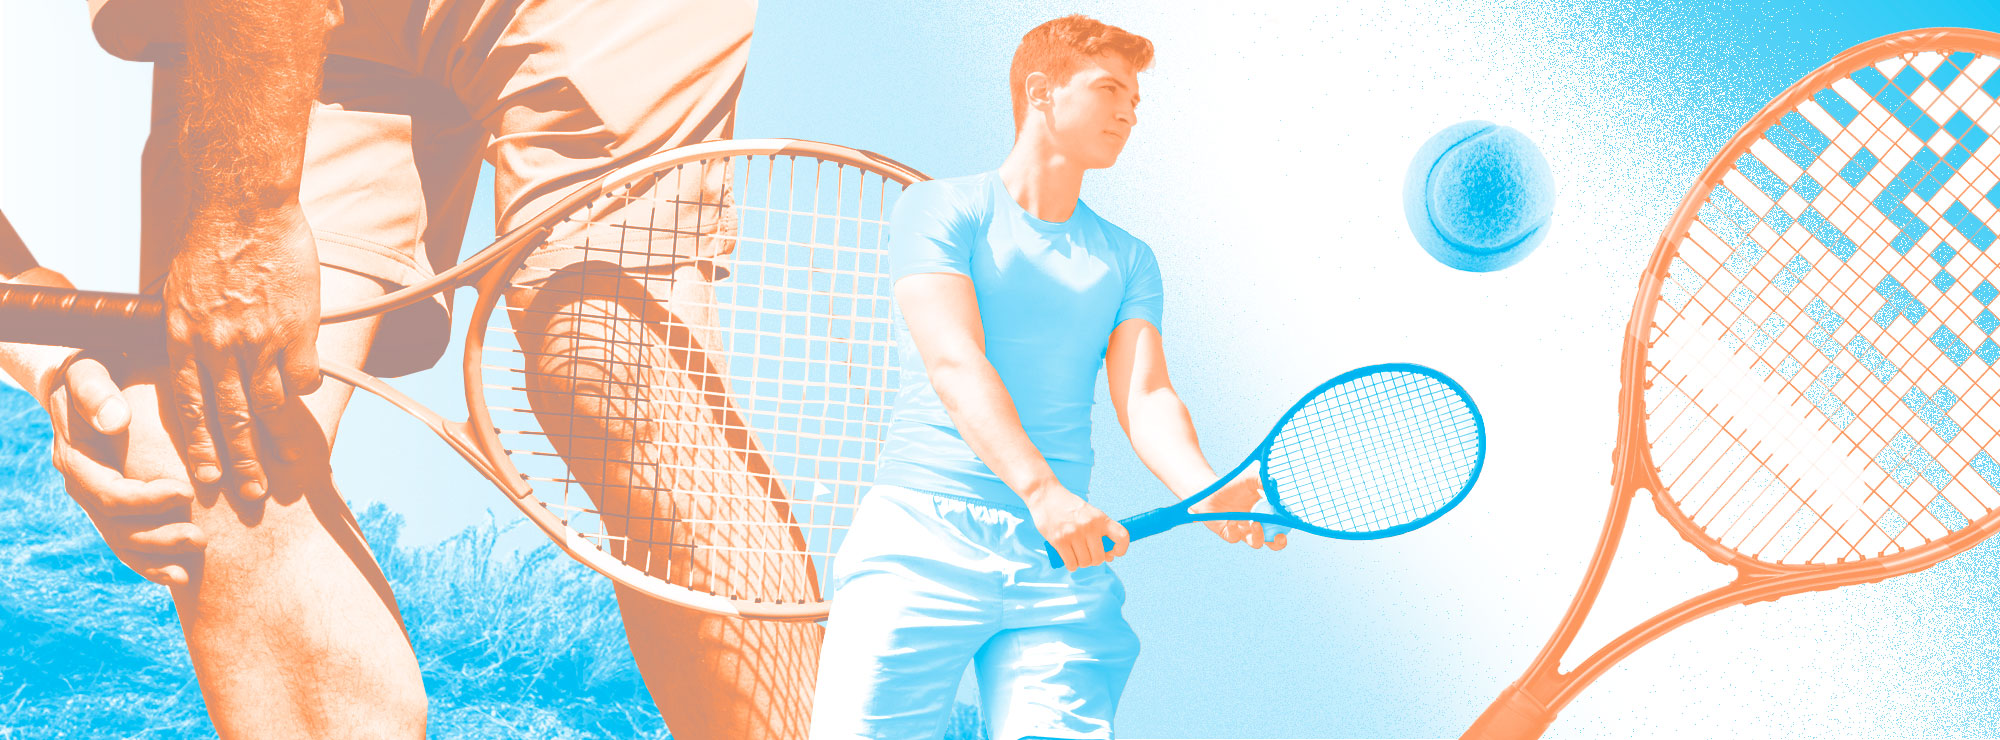 Полноразмерная обложка поста на тему: Хочу играть в большой теннис: какая ракетка подойдёт новичку